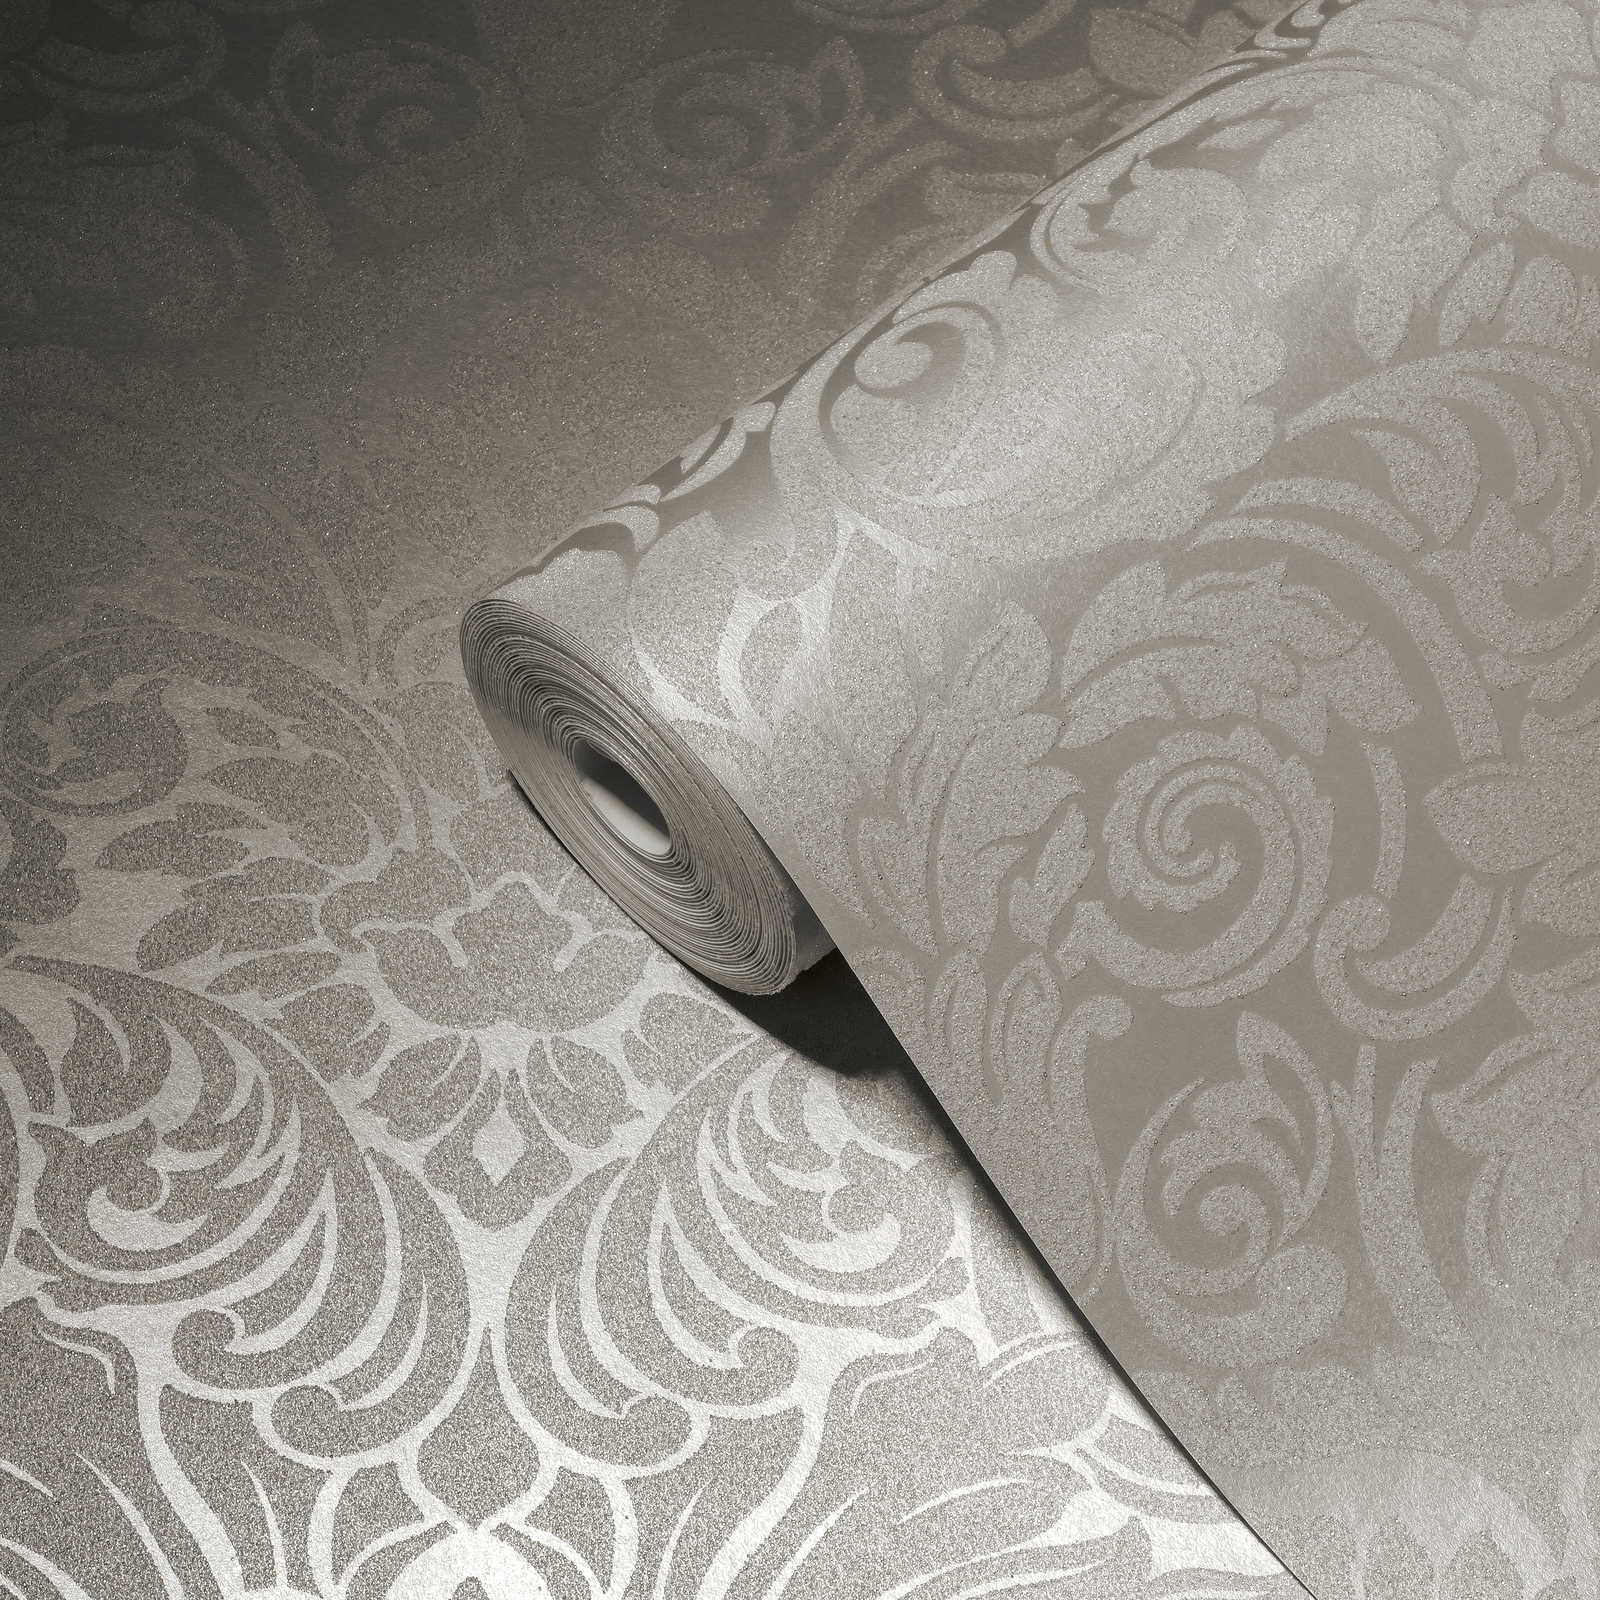             Papier peint ornemental à effet métallique et motif floral - argent, crème
        